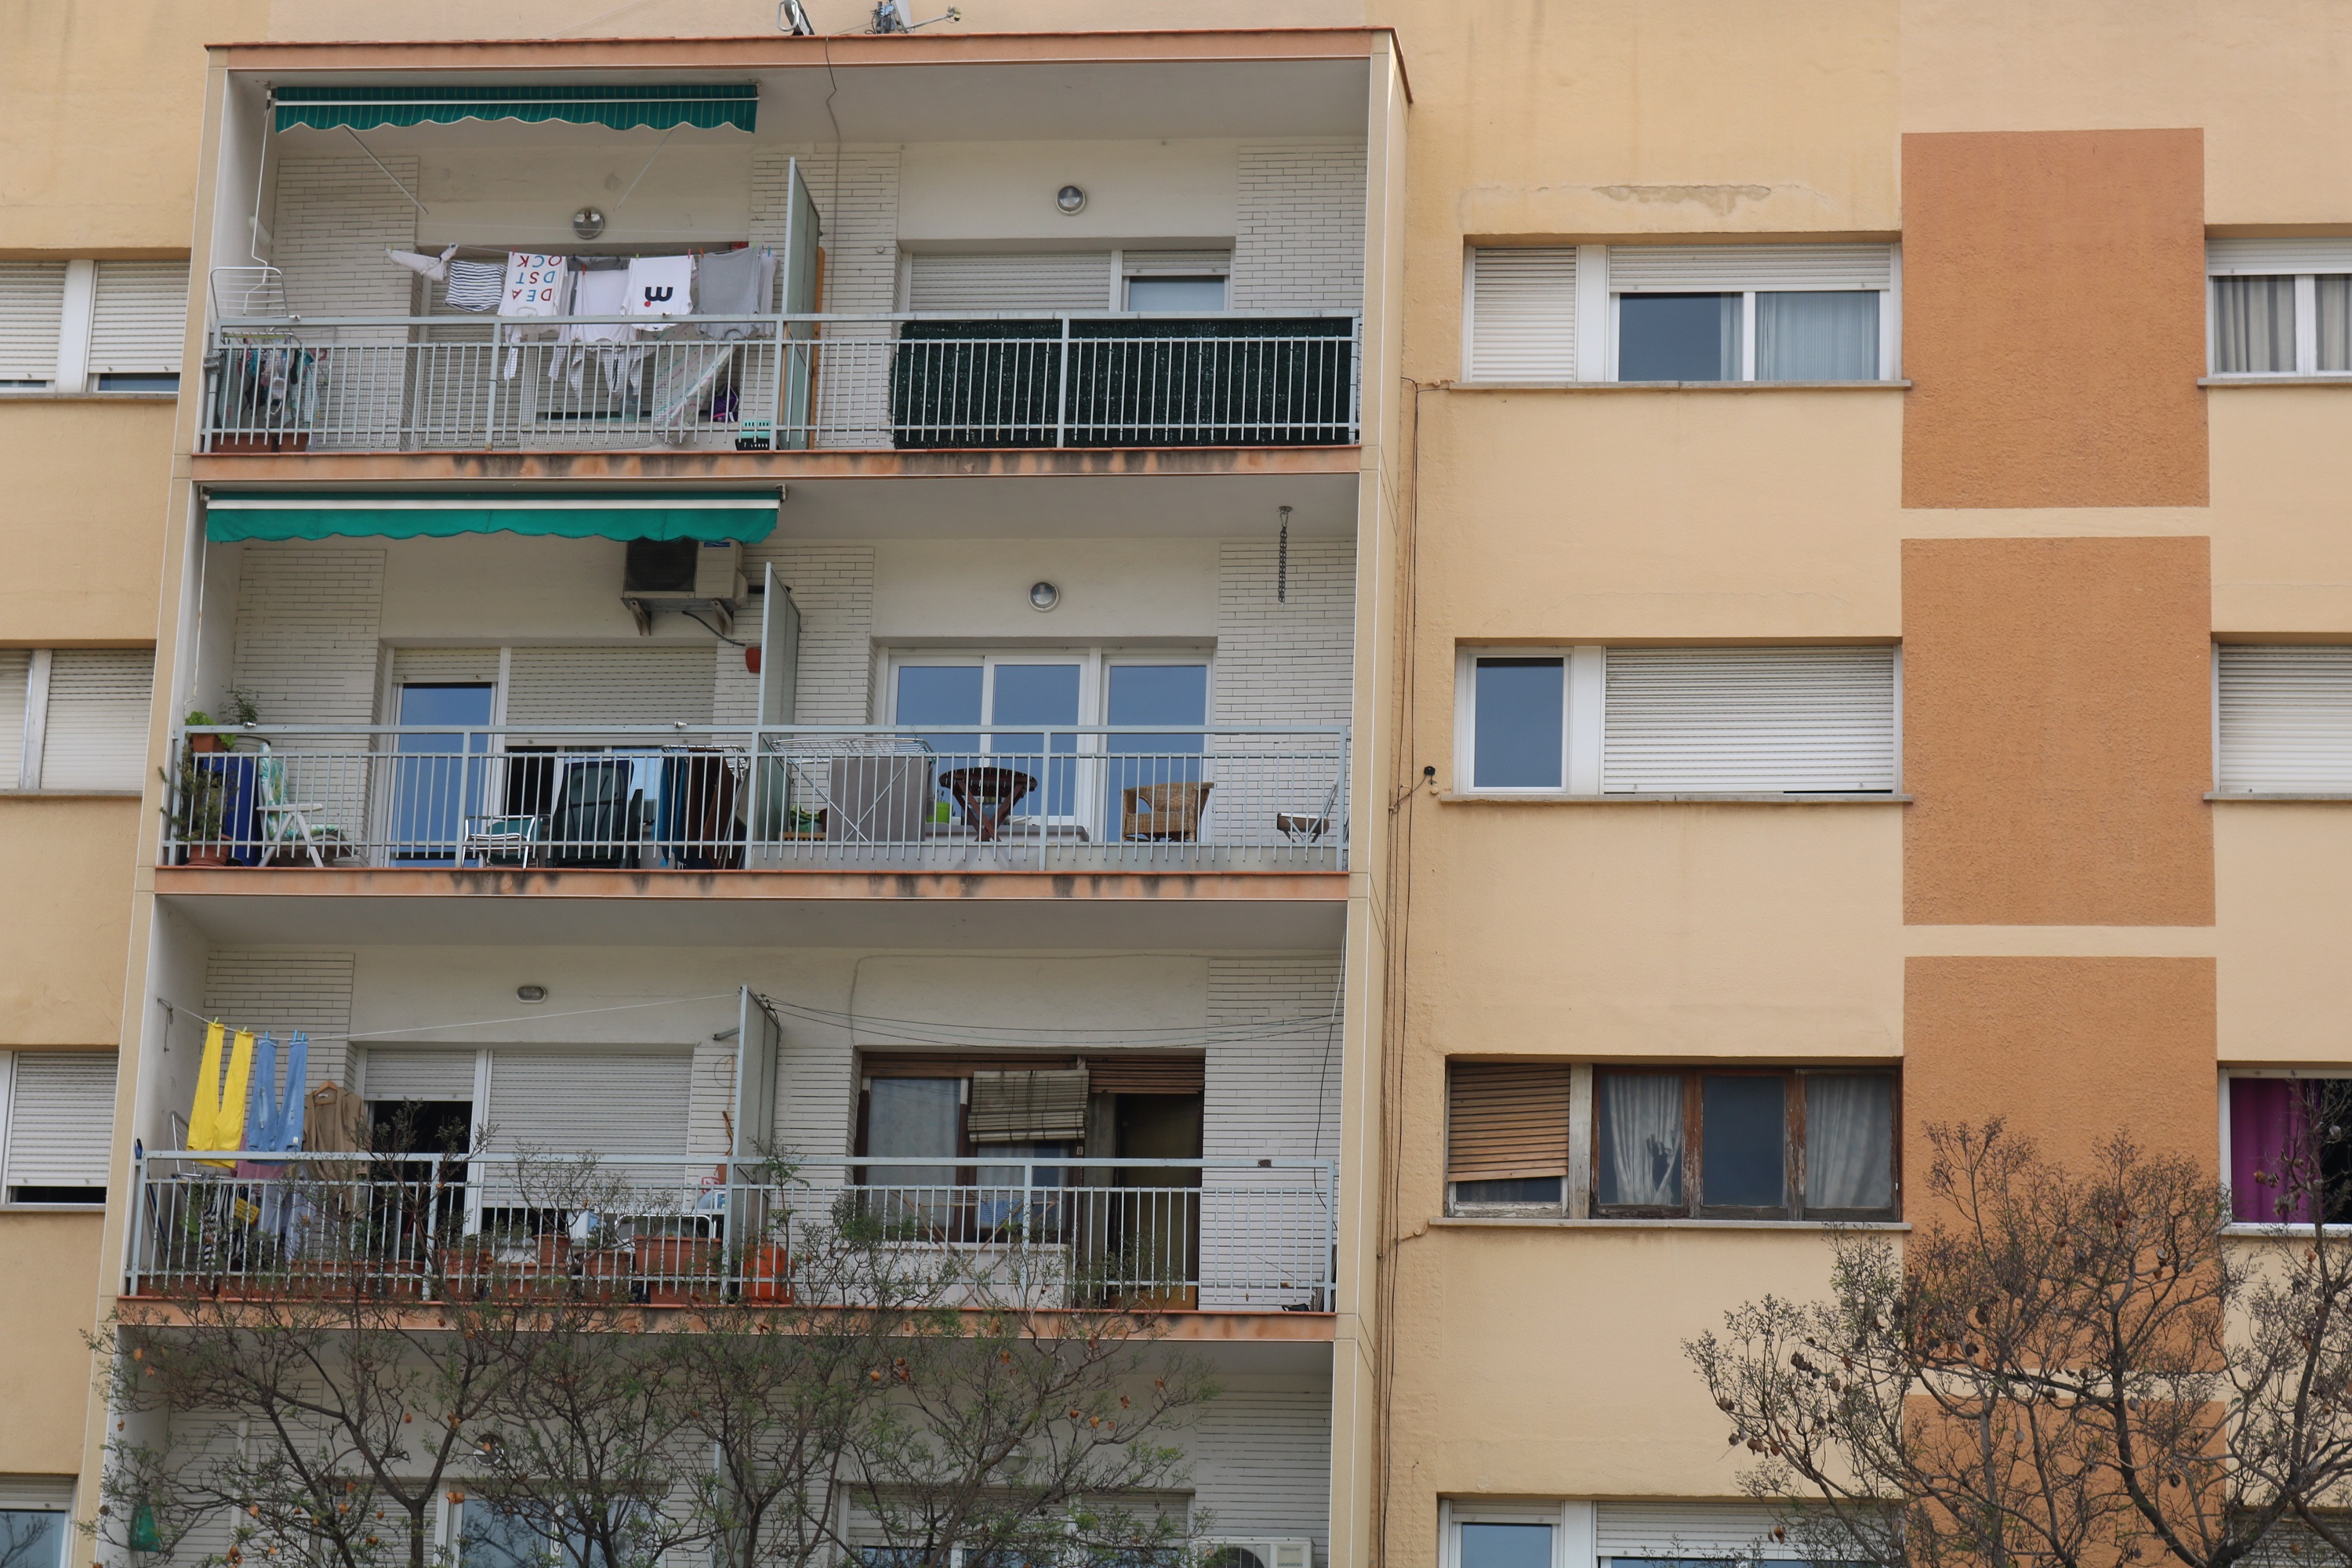 Sant Andreu de la Barca dins la zona amb mesures per moderar el preu dels lloguers d'habitatges